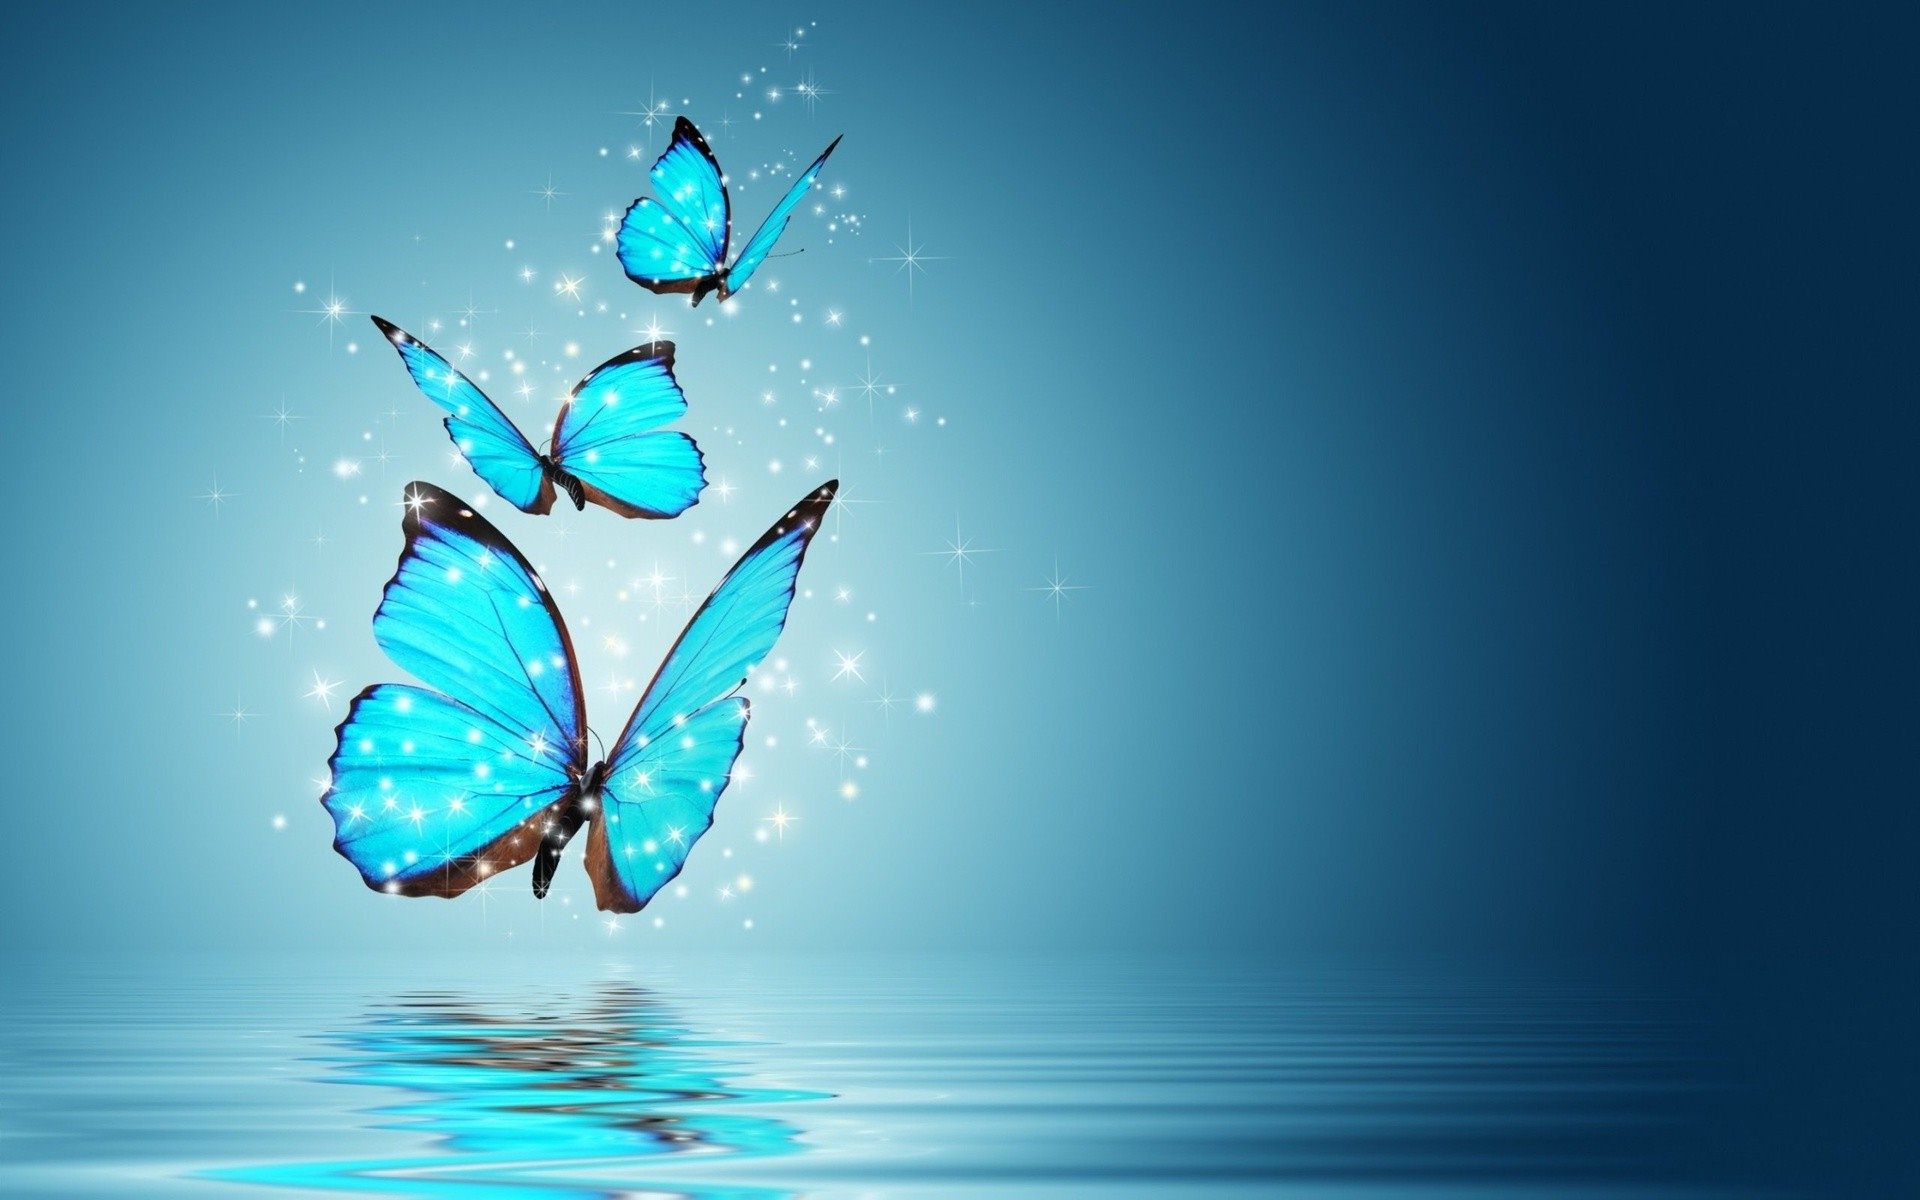 Hình nền desktop bướm đẹp sẽ mang đến cho bạn sự tươi mới và sự lãng mạn. Hình ảnh bướm bay lượn và màu sắc tươi sáng sẽ giúp bạn tập trung tốt hơn trong công việc của mình. Bạn cũng có thể sử dụng nó để thăng hoa thêm tình yêu cho cuộc sống.